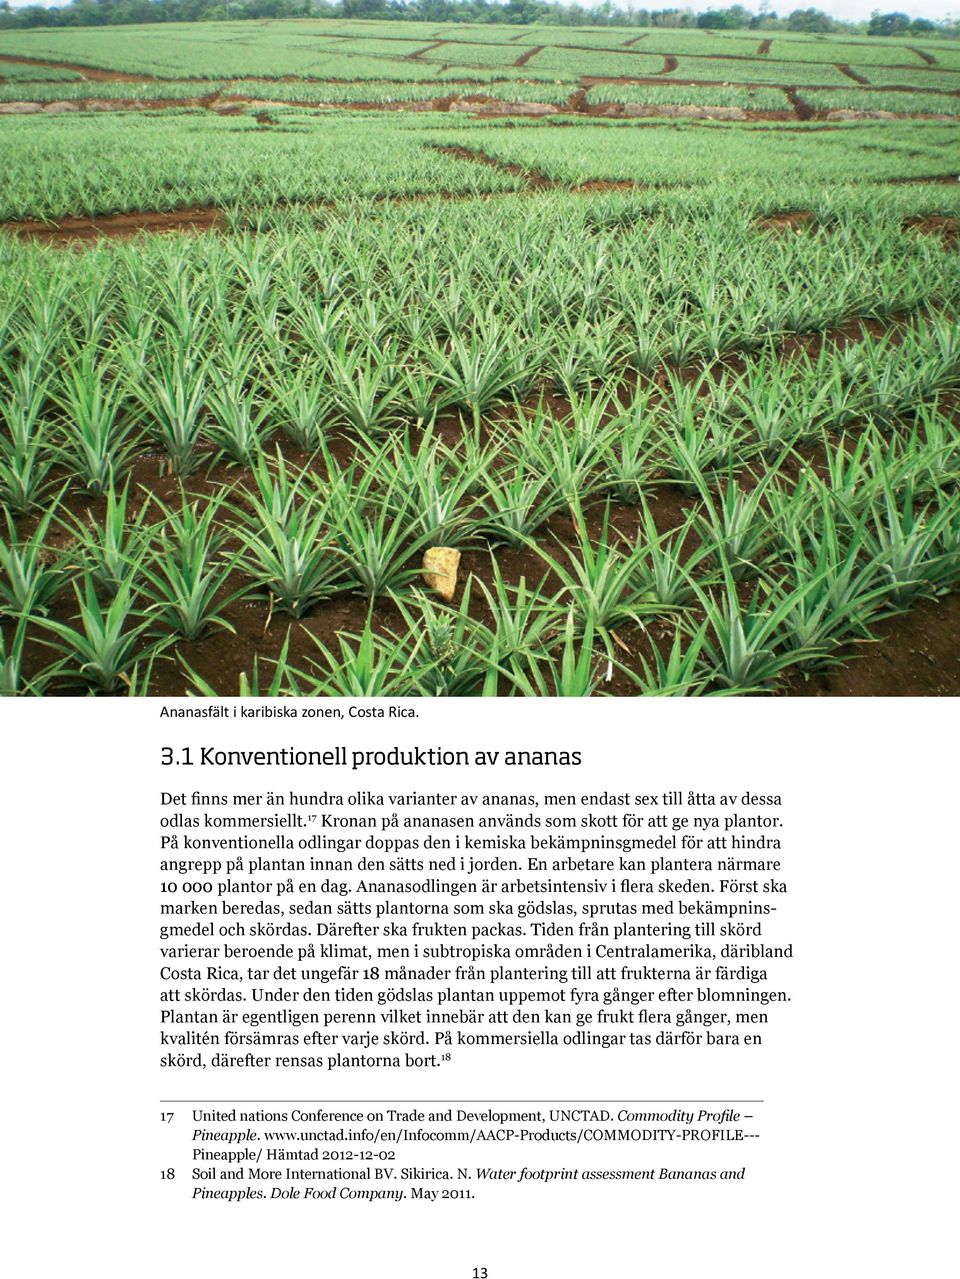 En arbetare kan plantera närmare 10 000 plantor på en dag. Ananasodlingen är arbetsintensiv i flera skeden.